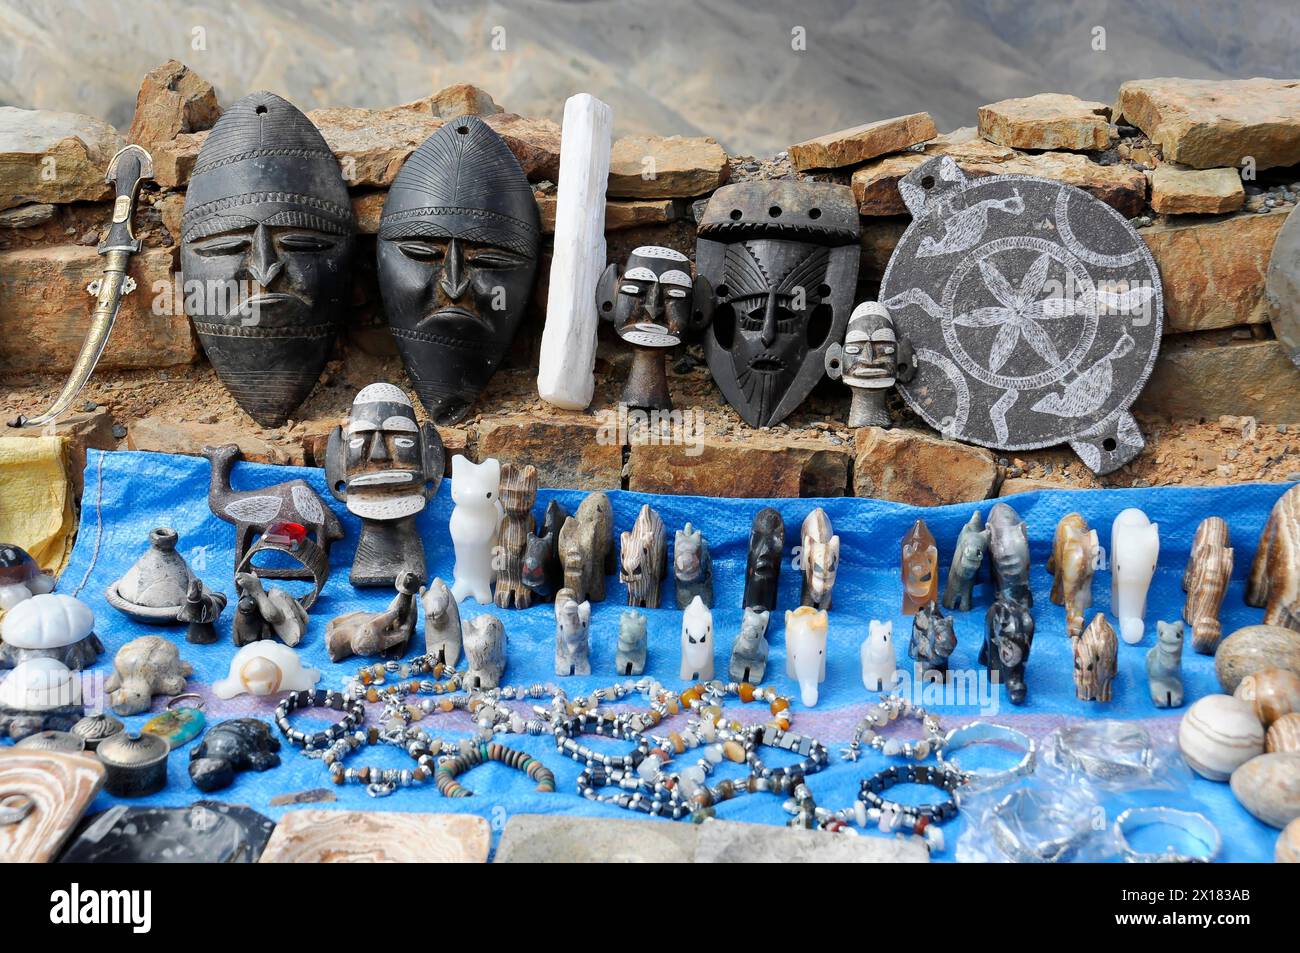 Verschiedene Handwerkskunst mit afrikanischen Masken und Skulpturen auf einem Markt, südlicher Atlas, Marokko Stockfoto